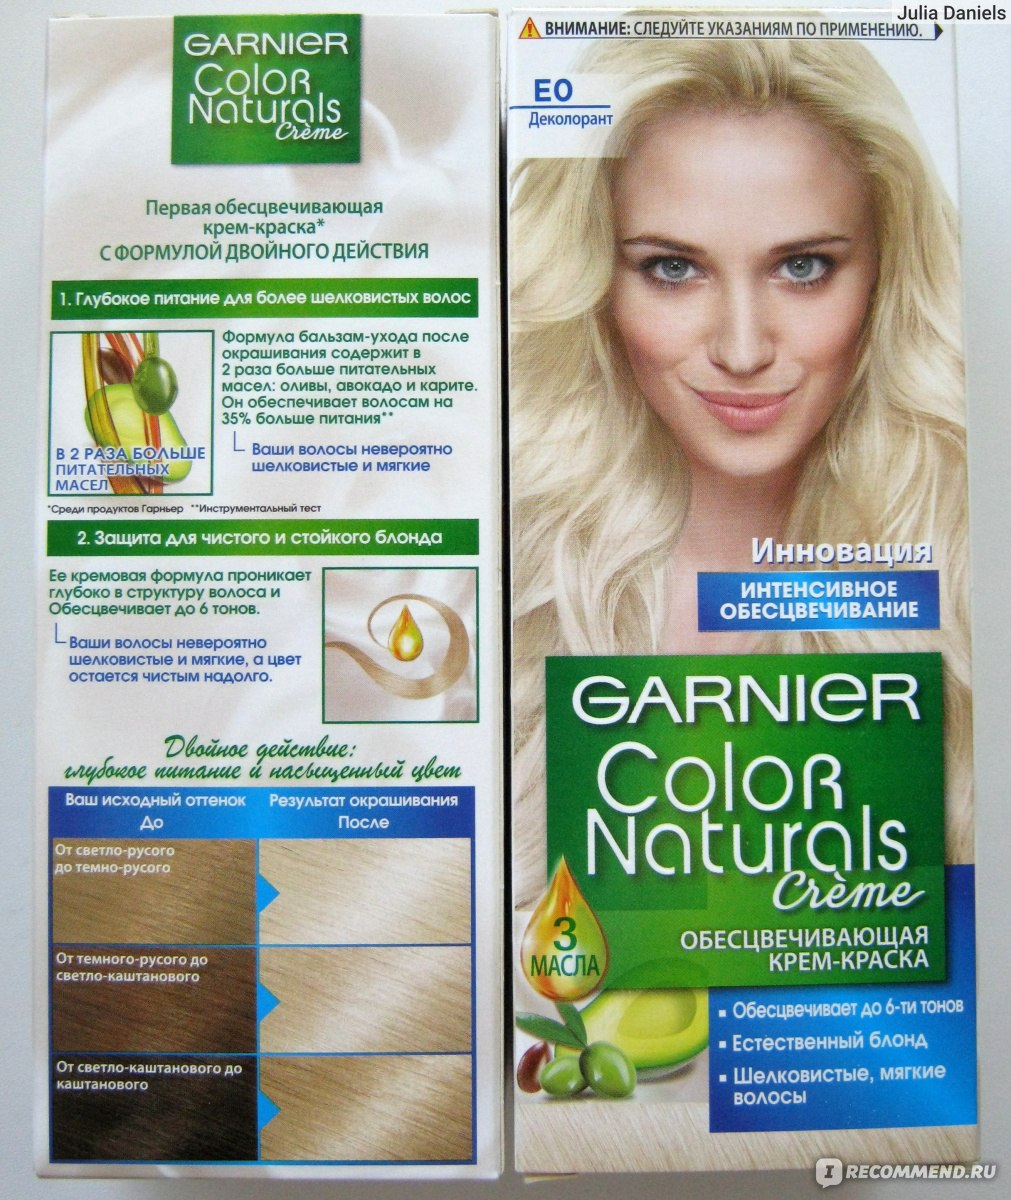 Маски для мелированных волос от garnier